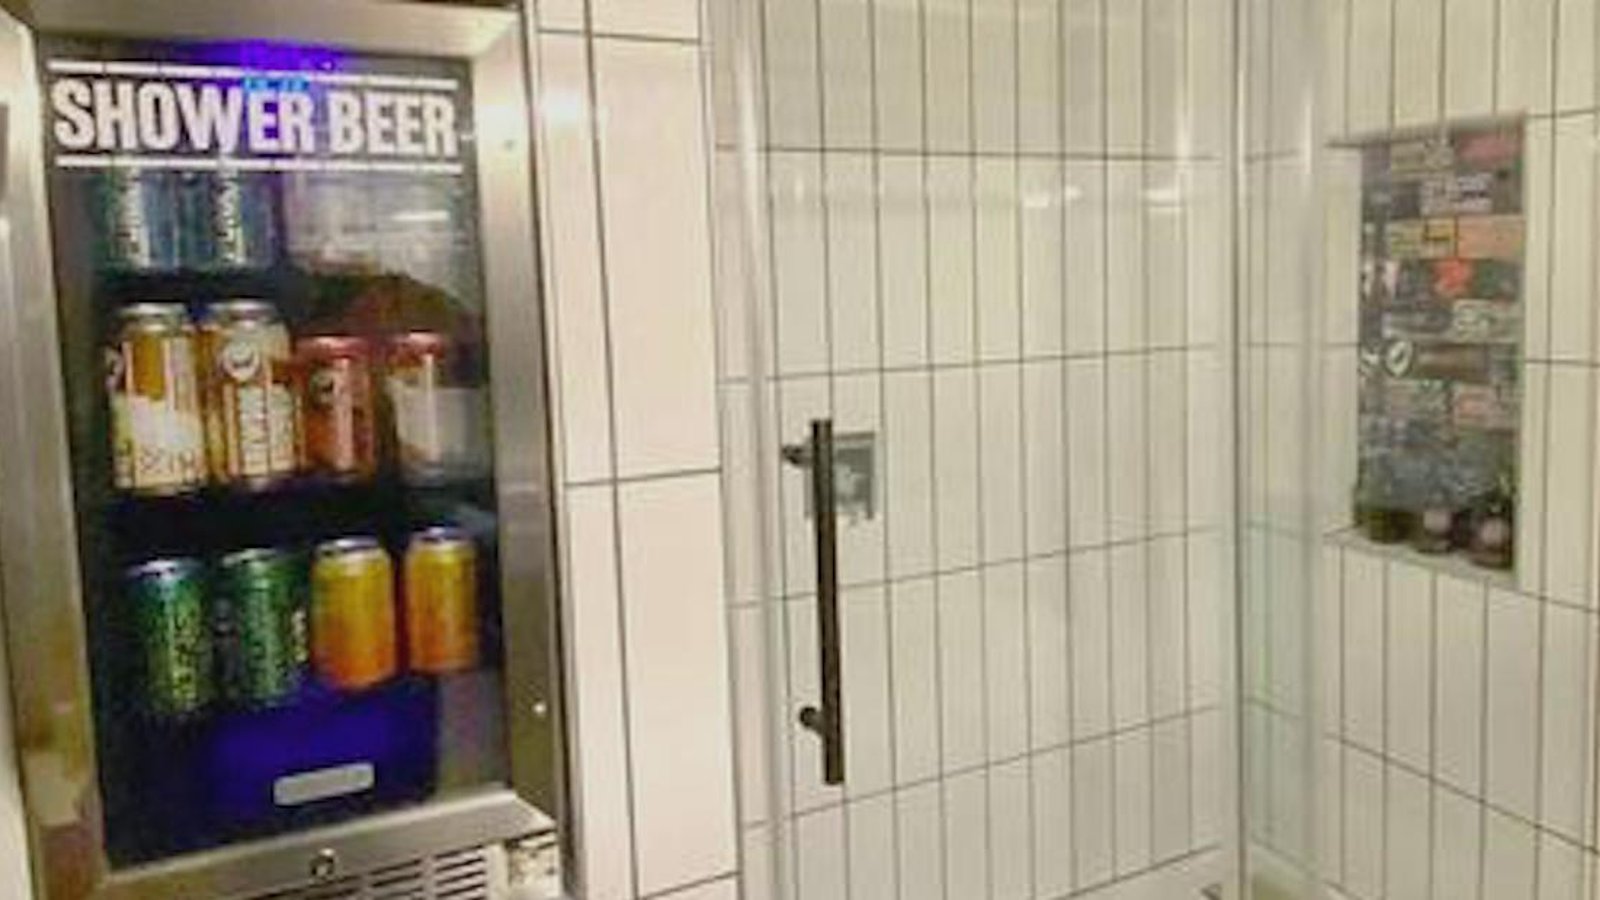 Le réfrigérateur à bière de douche existe réellement